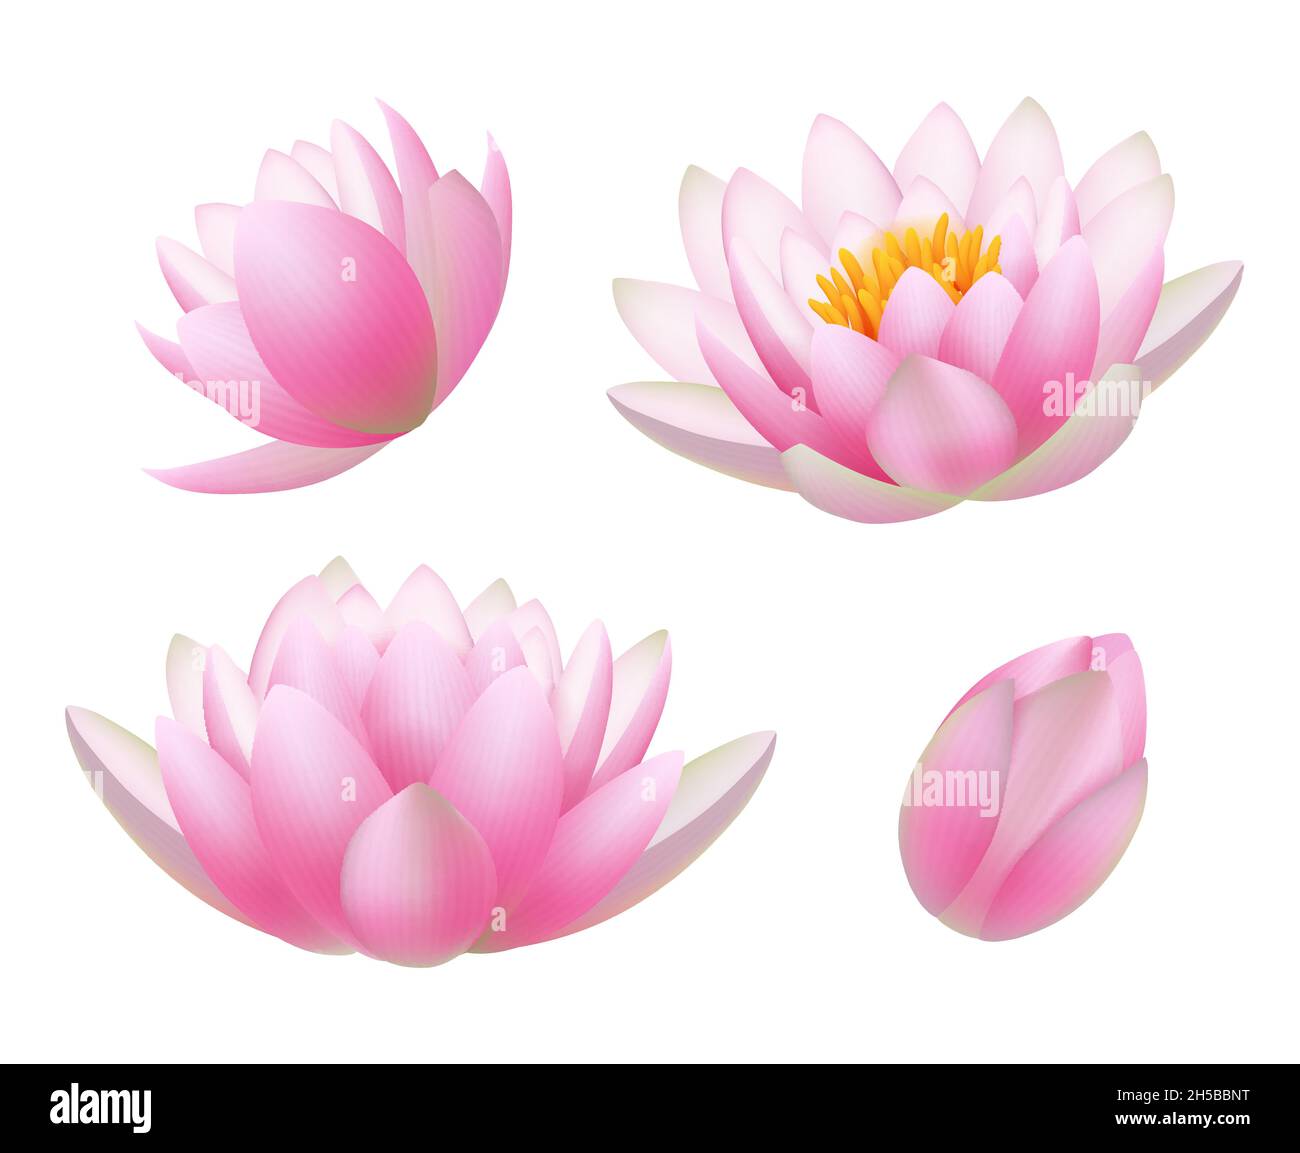 Lotusblumen. Realistische schöne Pflanzen Blumen Knospen und Blätter buddhismus Symbole anständige Vektor Natur Bilder Stock Vektor